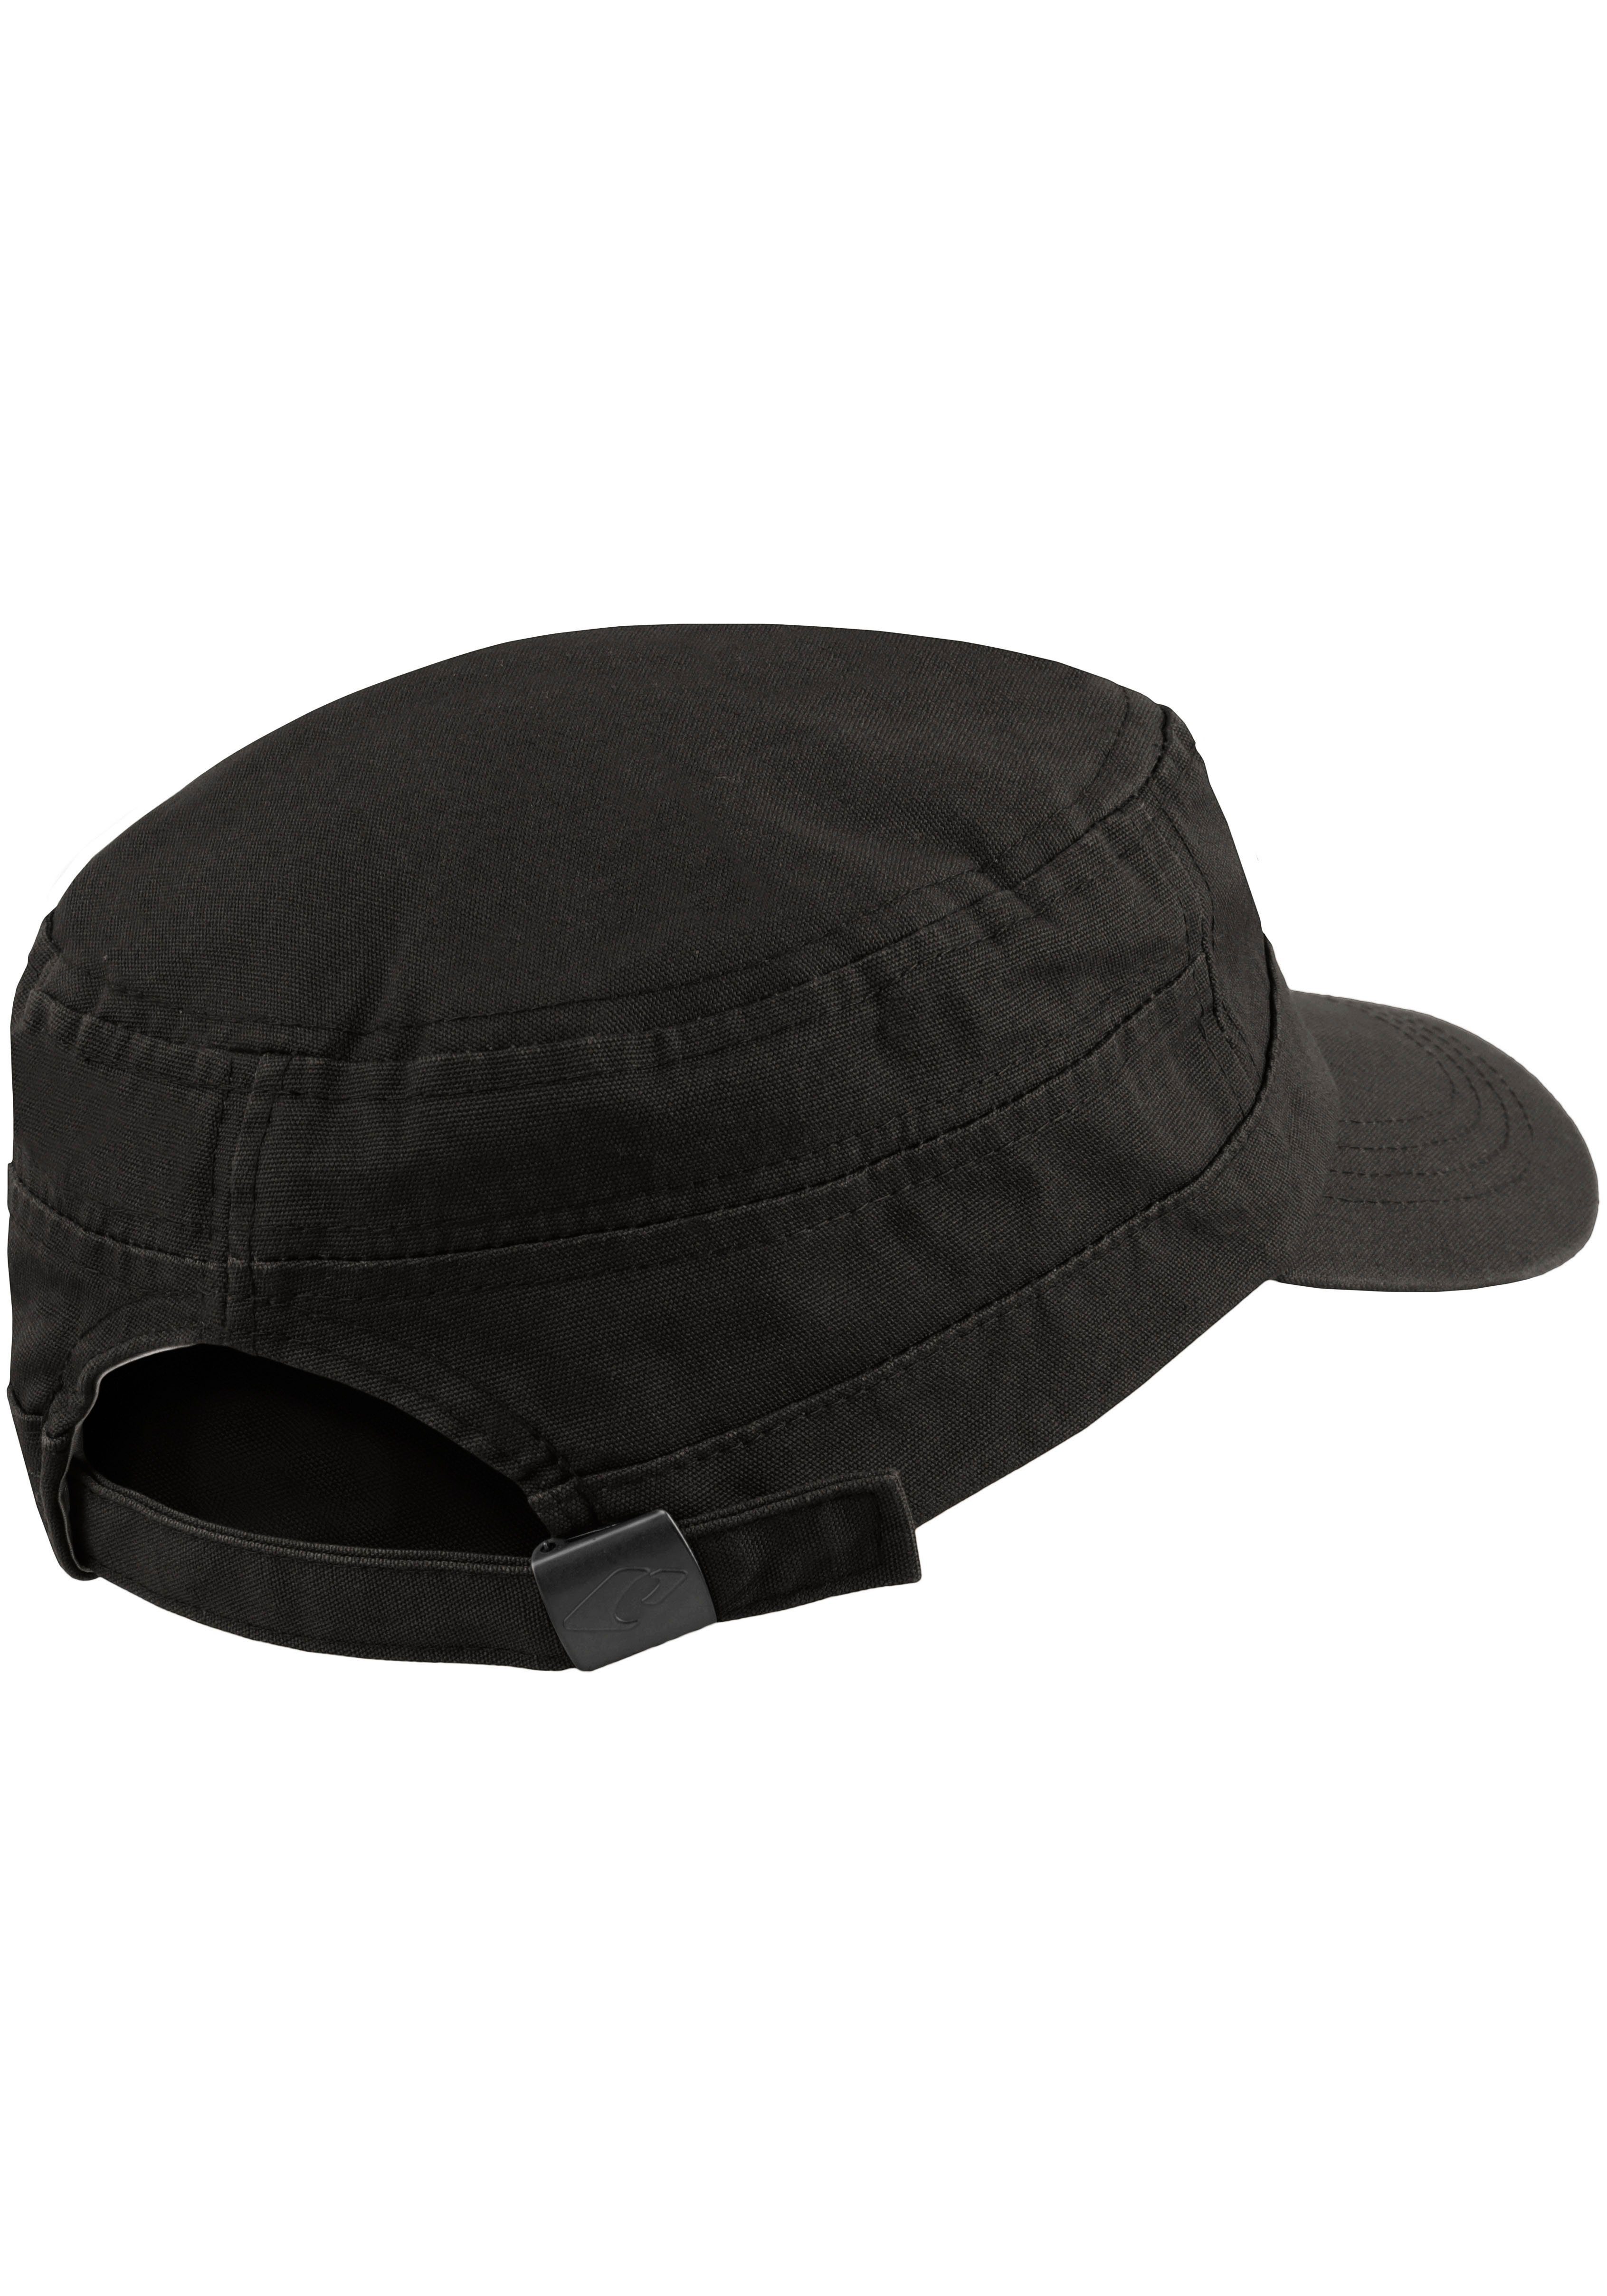 chillouts Army Cap El Paso Size schwarz Hat aus Baumwolle, One atmungsaktiv, reiner